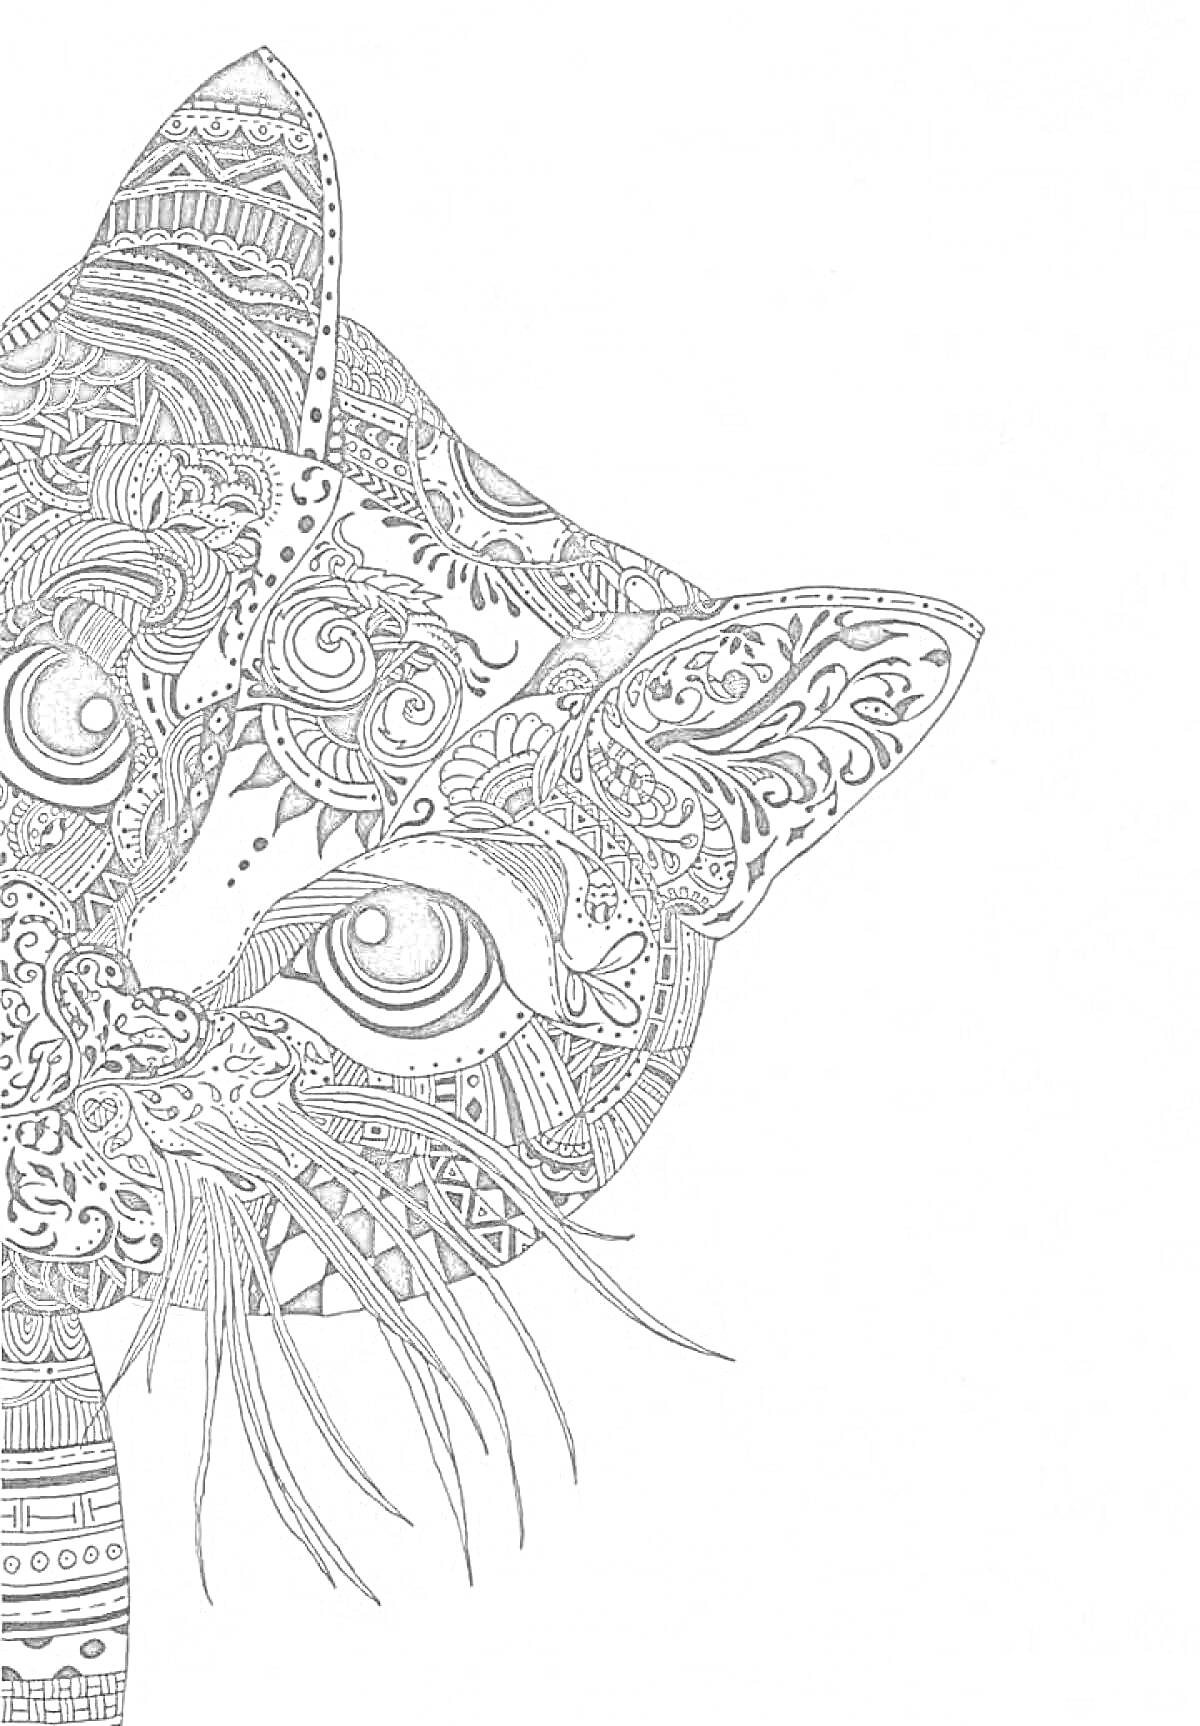 Раскраска Половина головы кота со сложным орнаментом, включающим цветы, волнистые линии и узоры